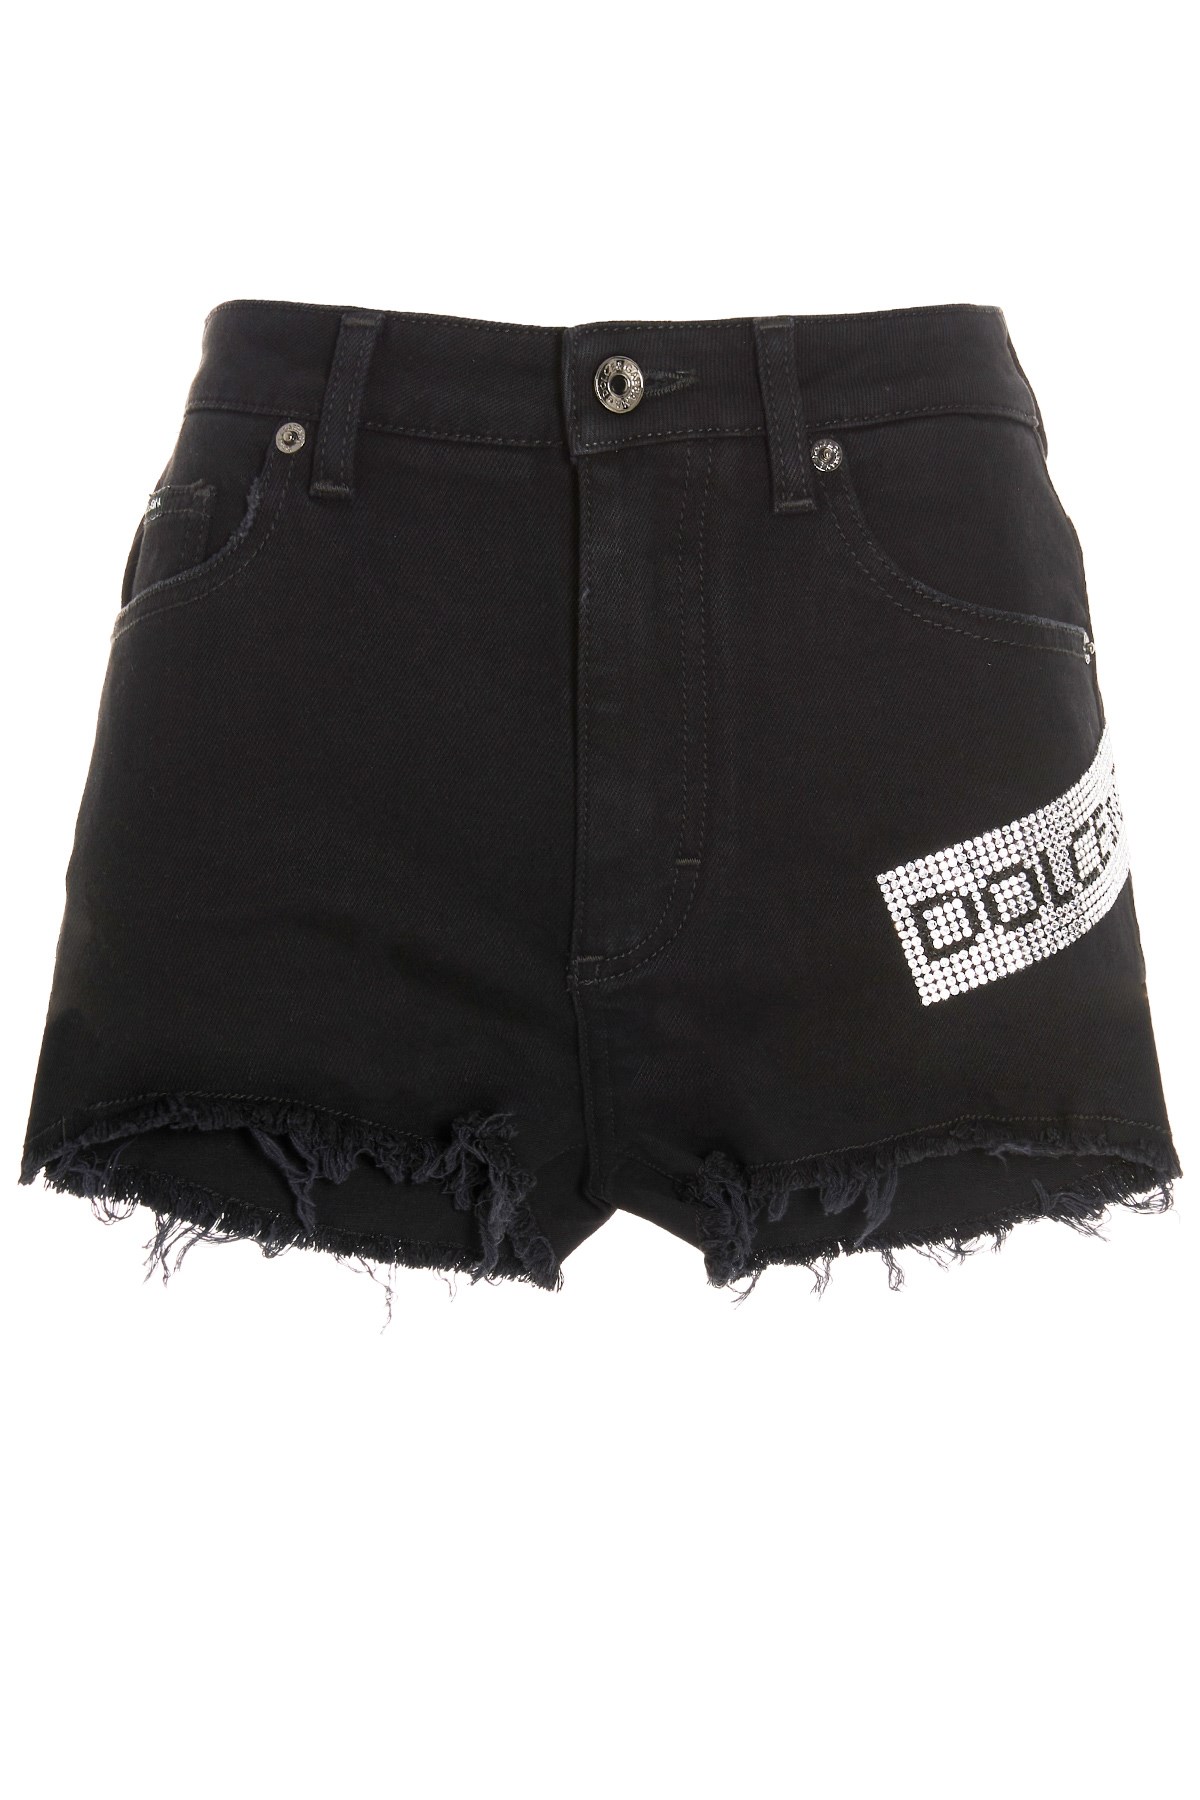 DOLCE & GABBANA Jewel Logo Tag Shorts